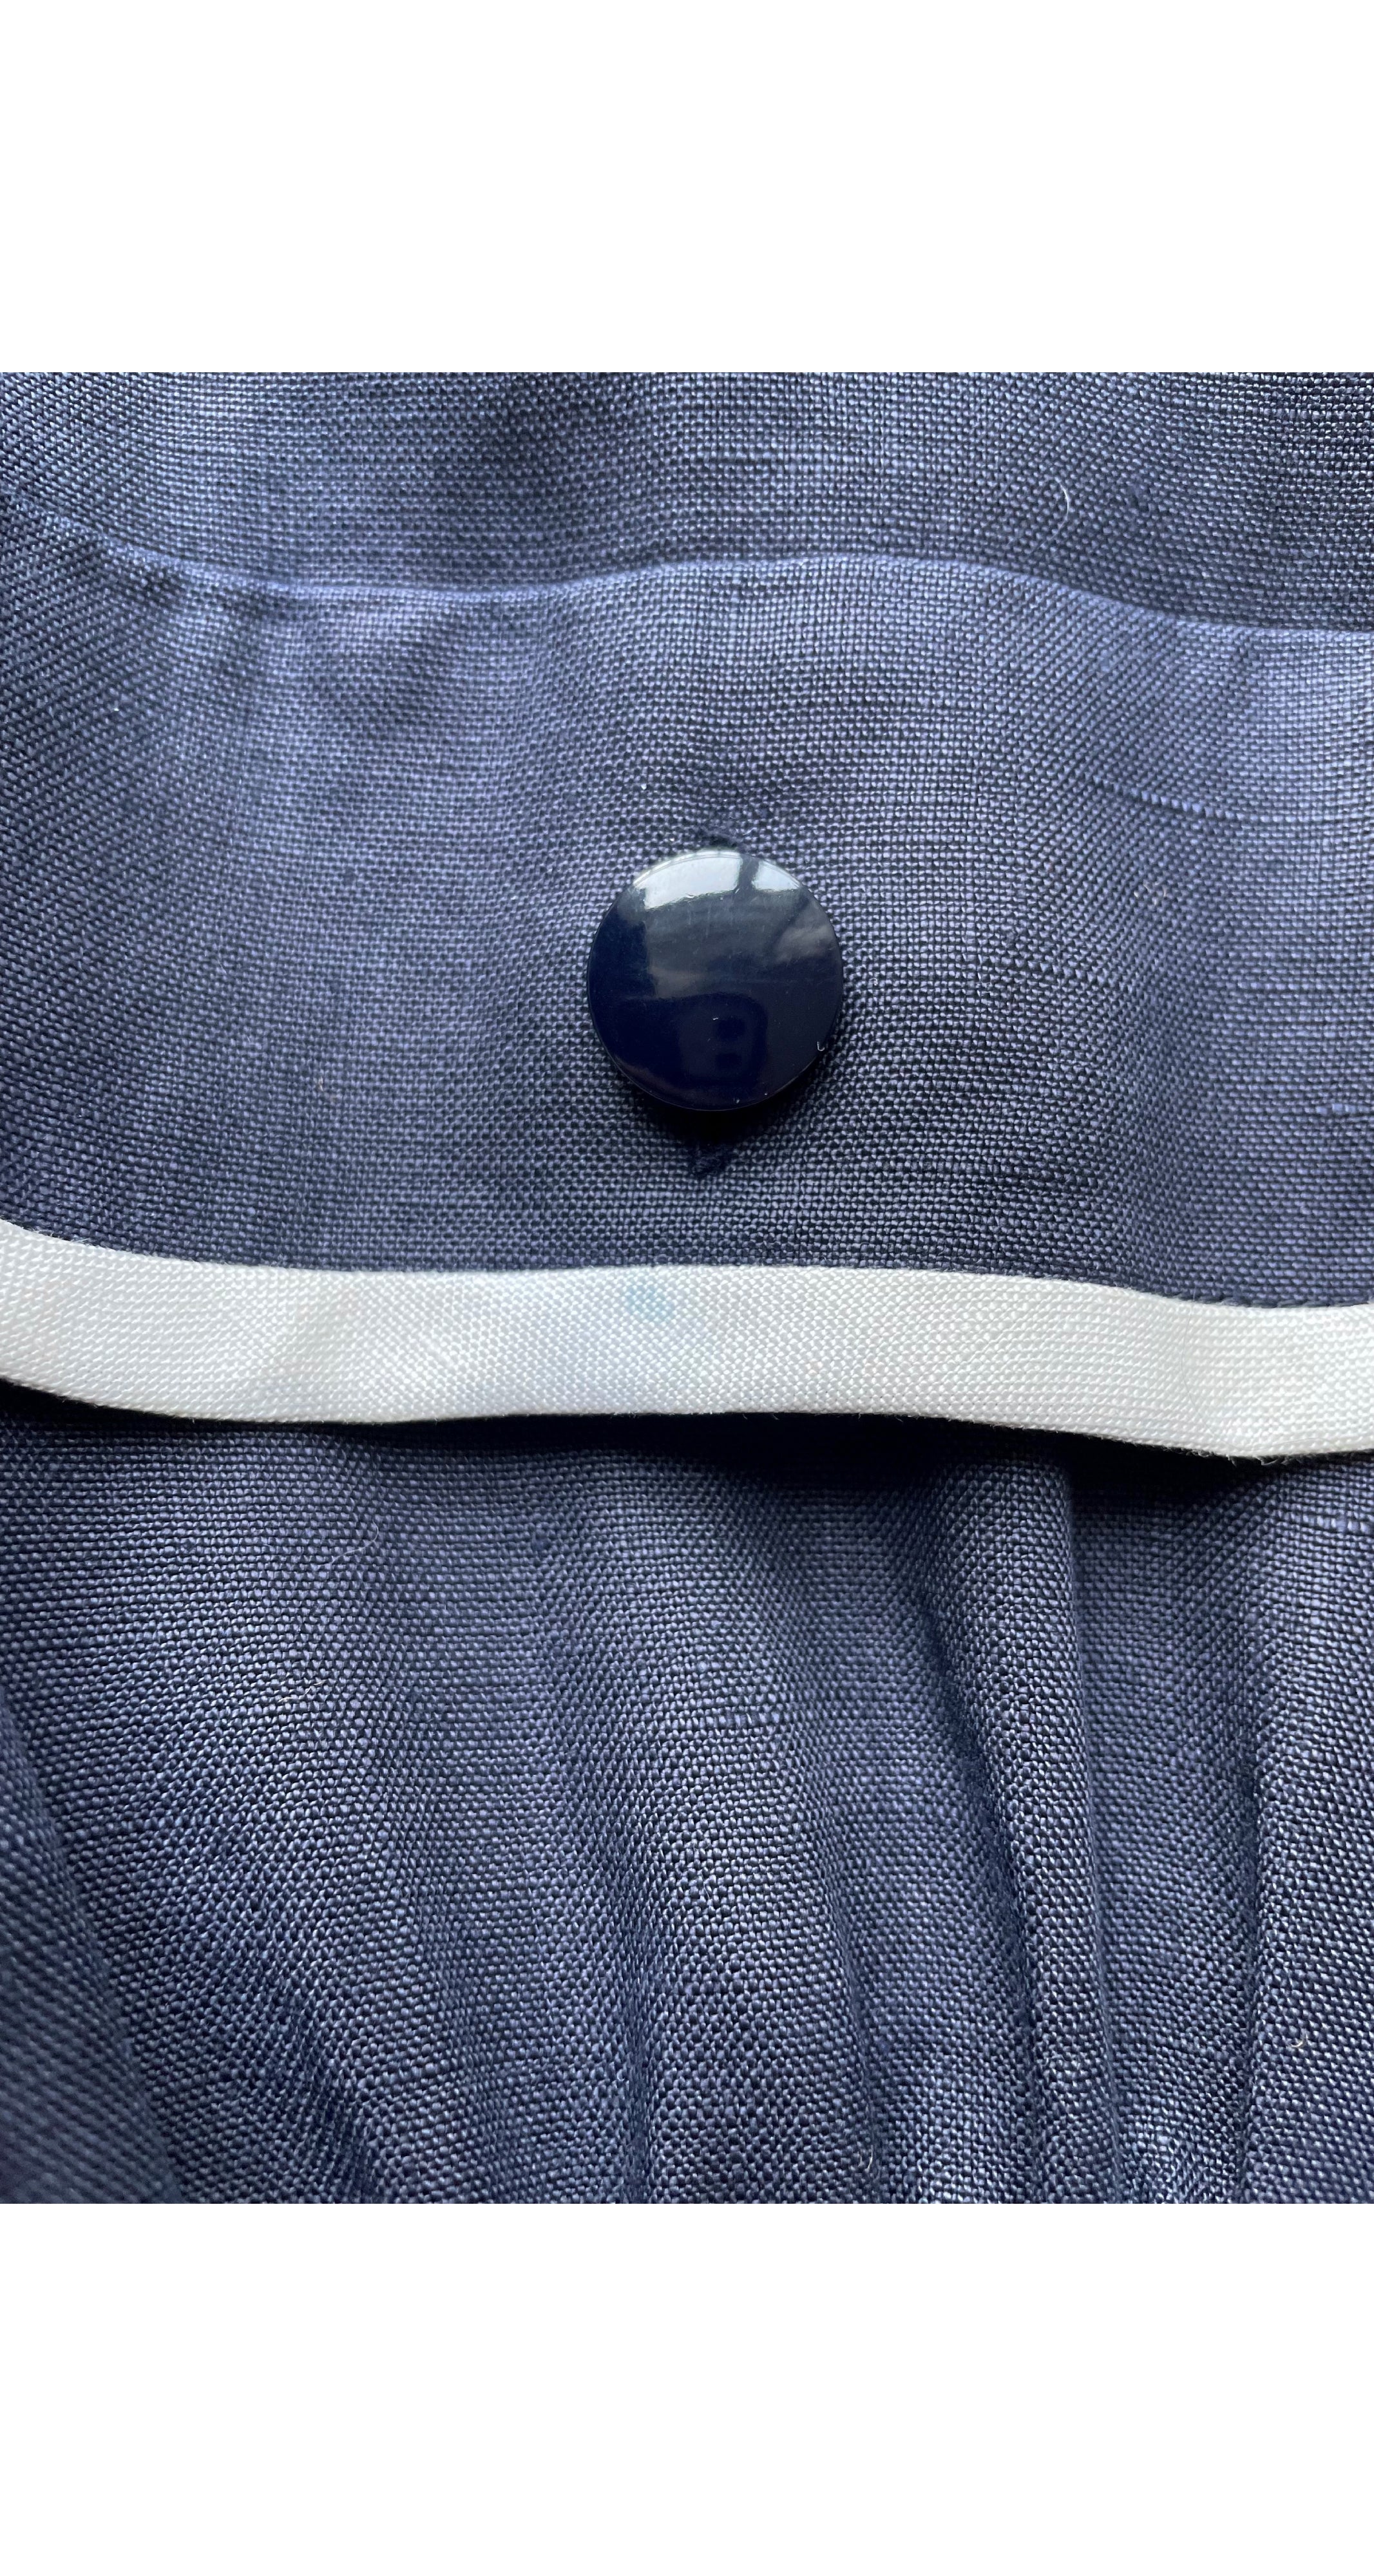 1990s Navy Blue Linen Collared Dress